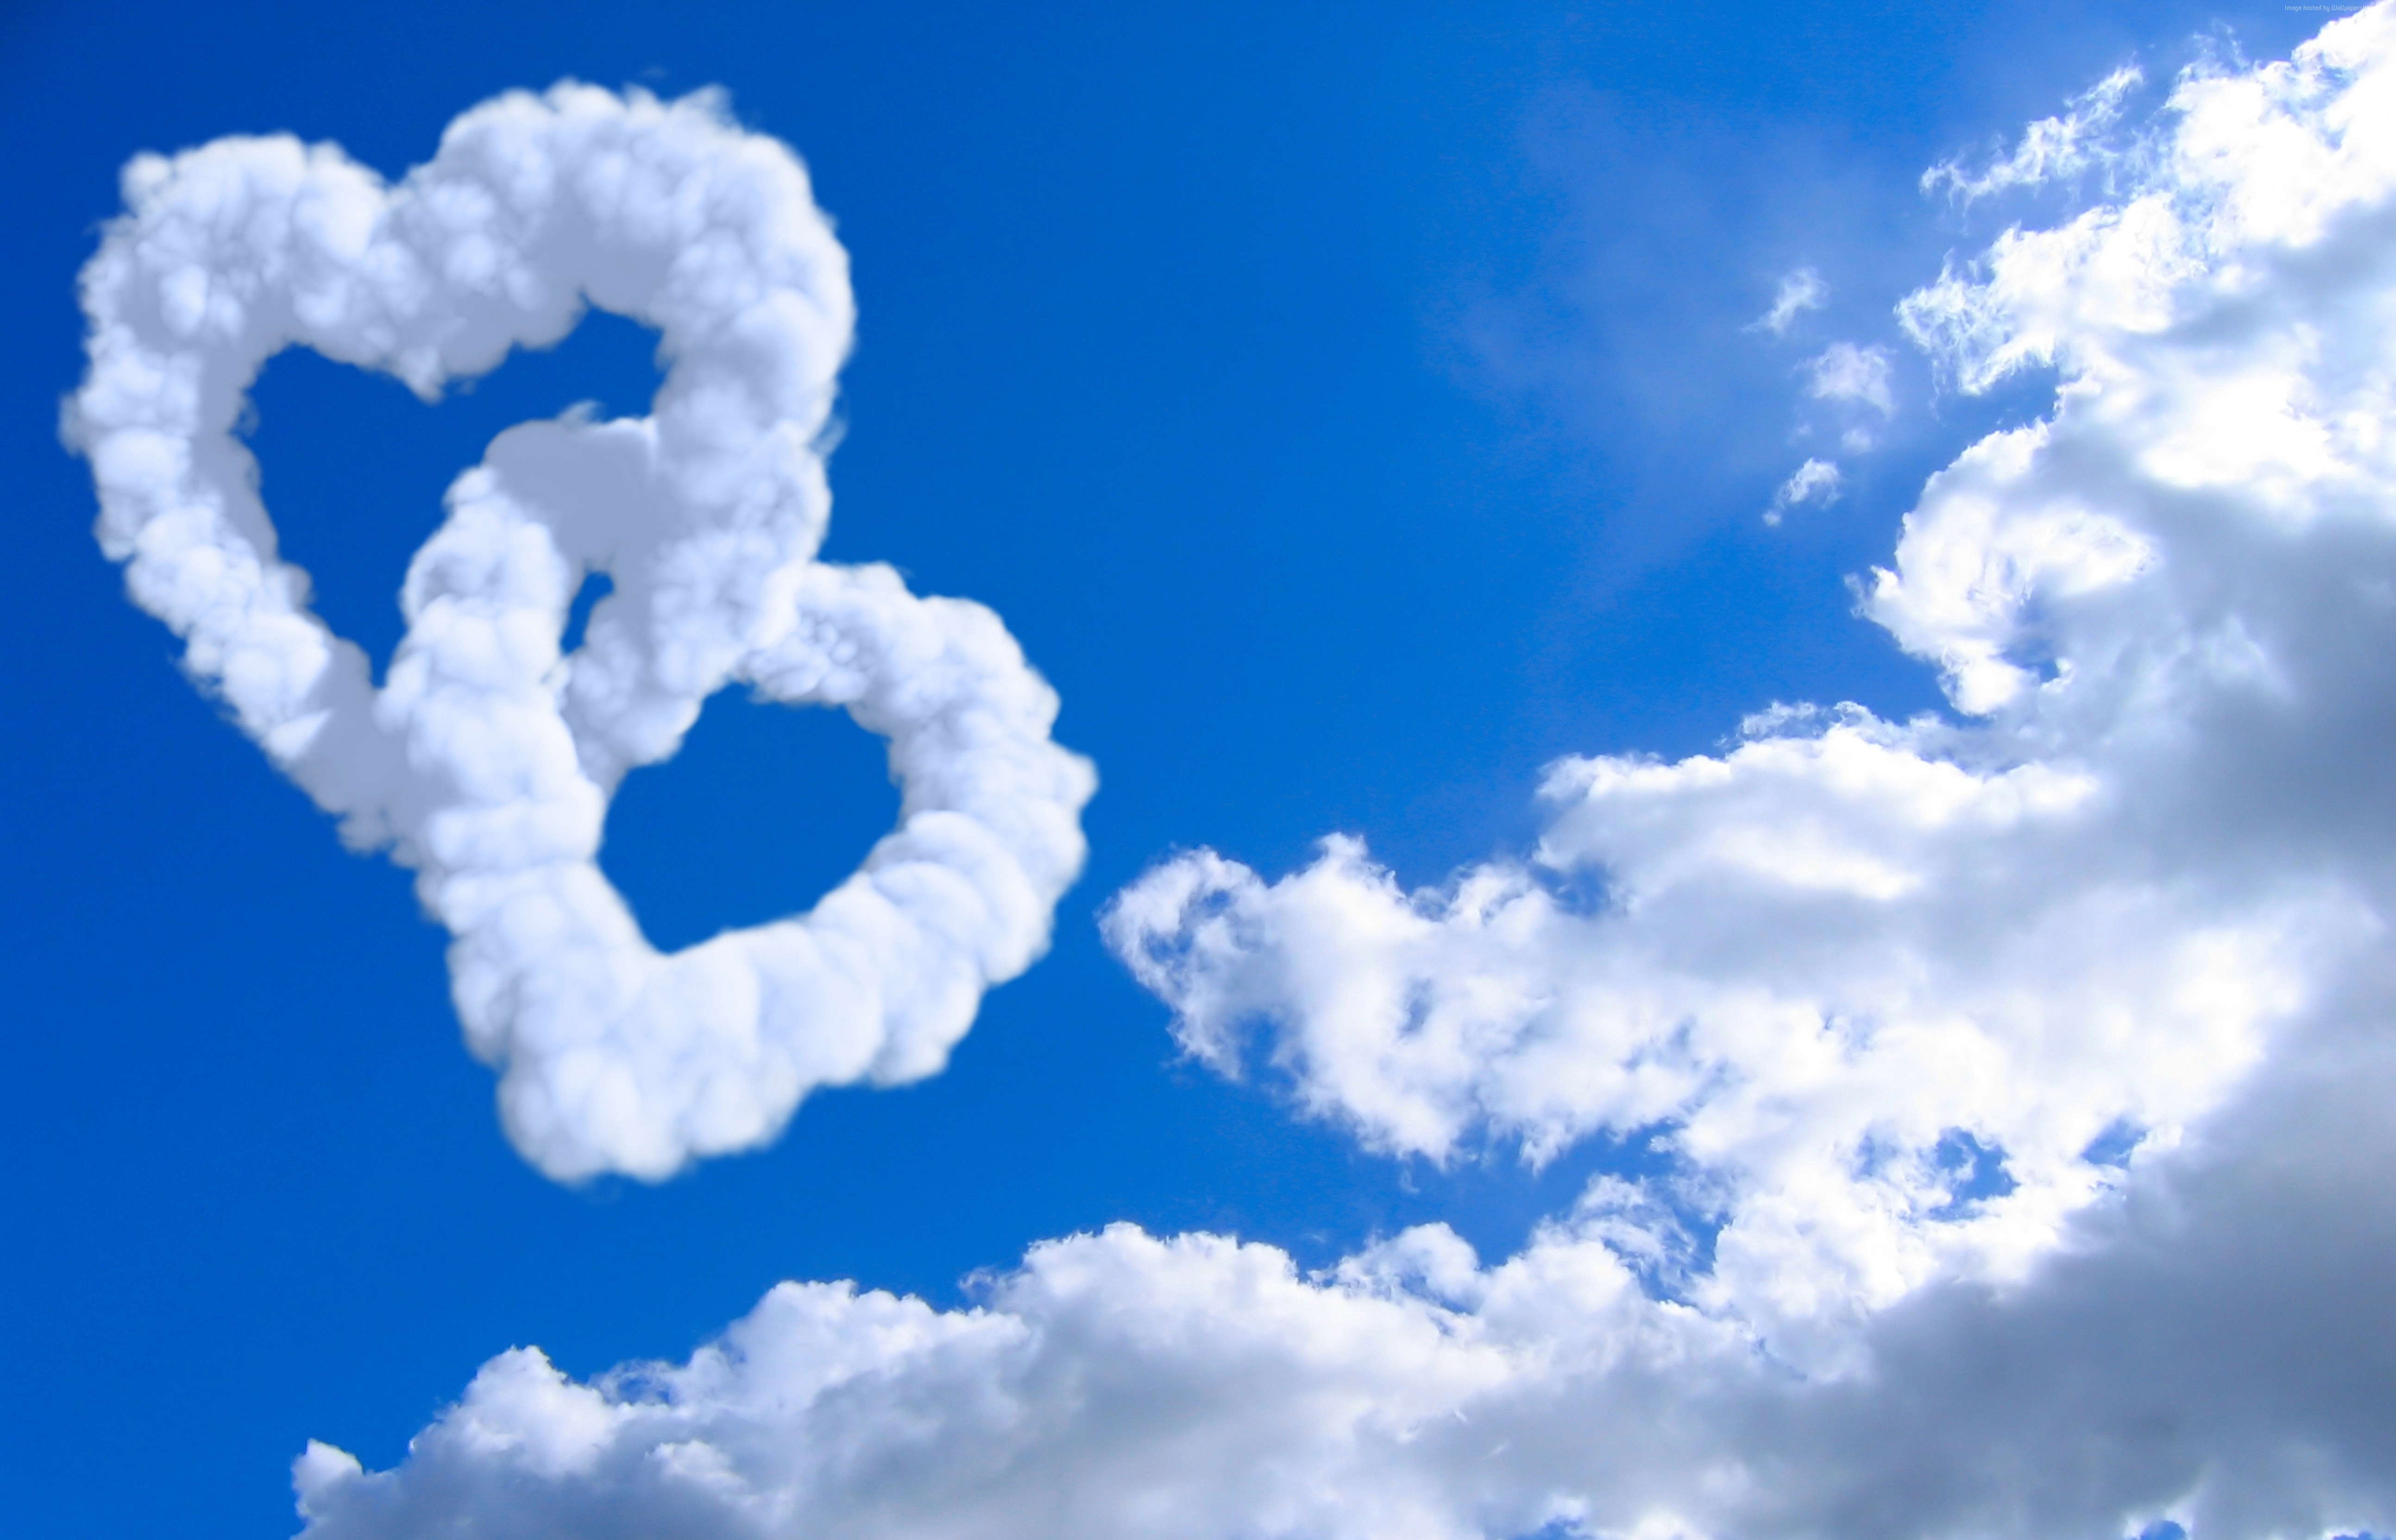 Я хочу чтобы небо было больше. Облака. Сердечко в небе. Сердечко из облаков. Облако в виде сердечка.